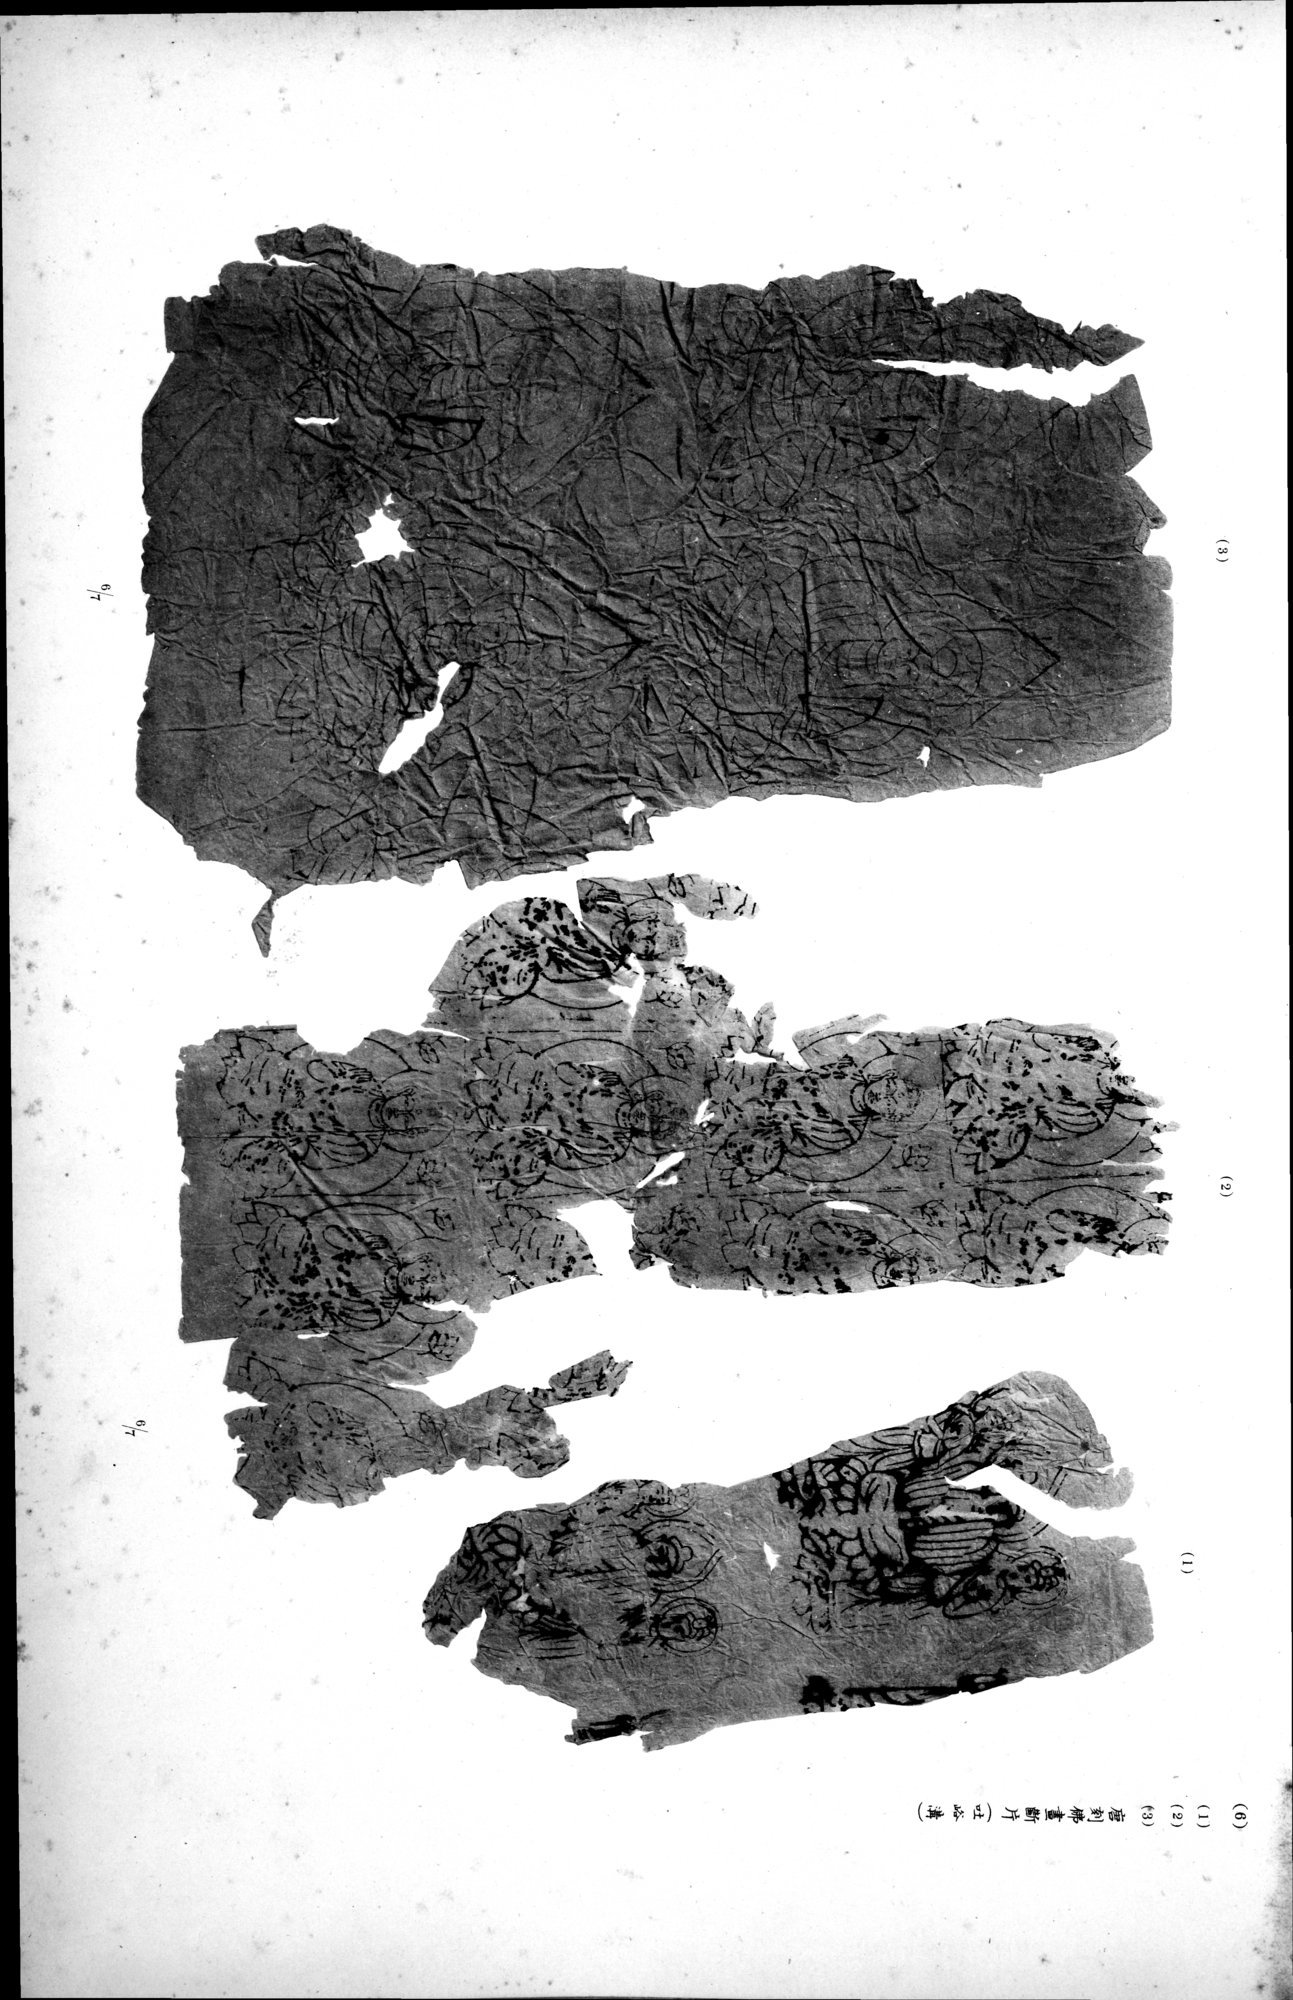 西域考古図譜 : vol.2 / Page 315 (Grayscale High Resolution Image)